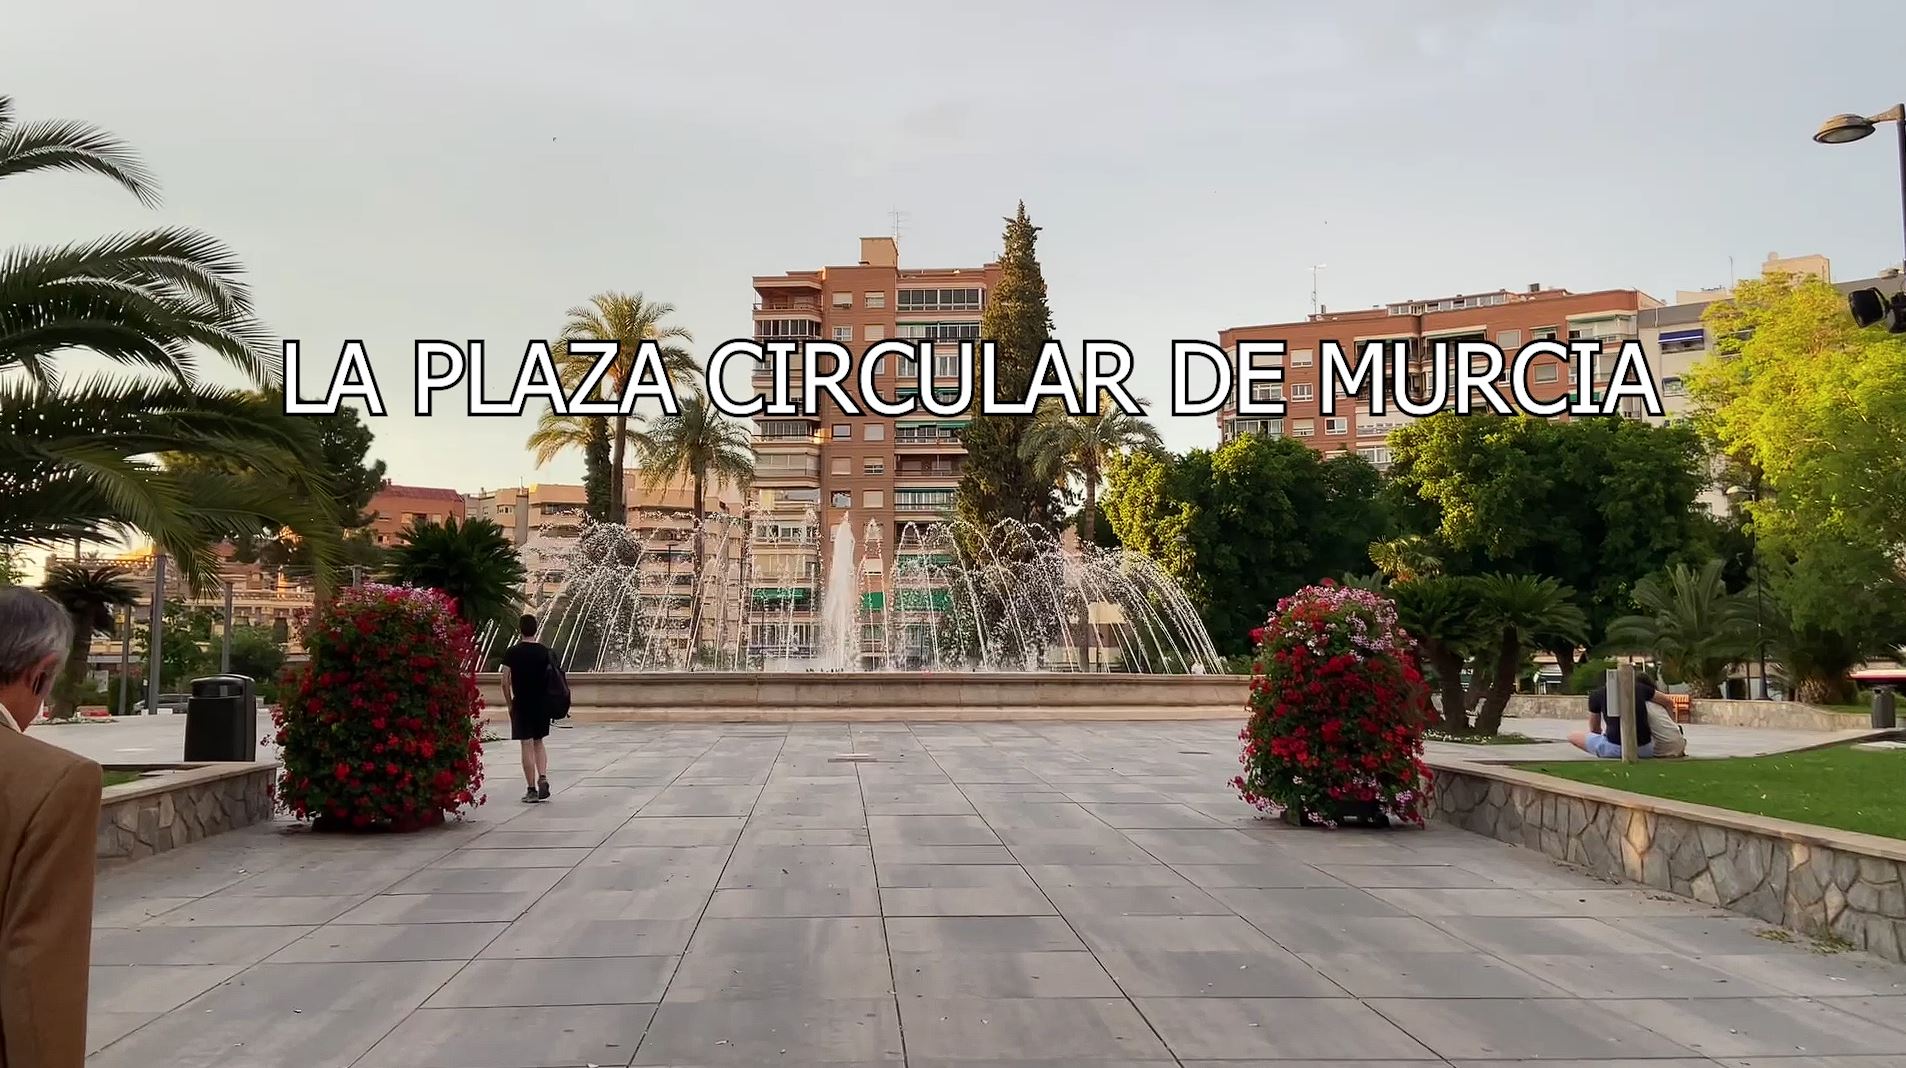 Plástica - Plaza Circular (Murcia) - Aroa Armero 4a Cecilia Mendoza 4a - Prof. Antonio Garcia Martinez -